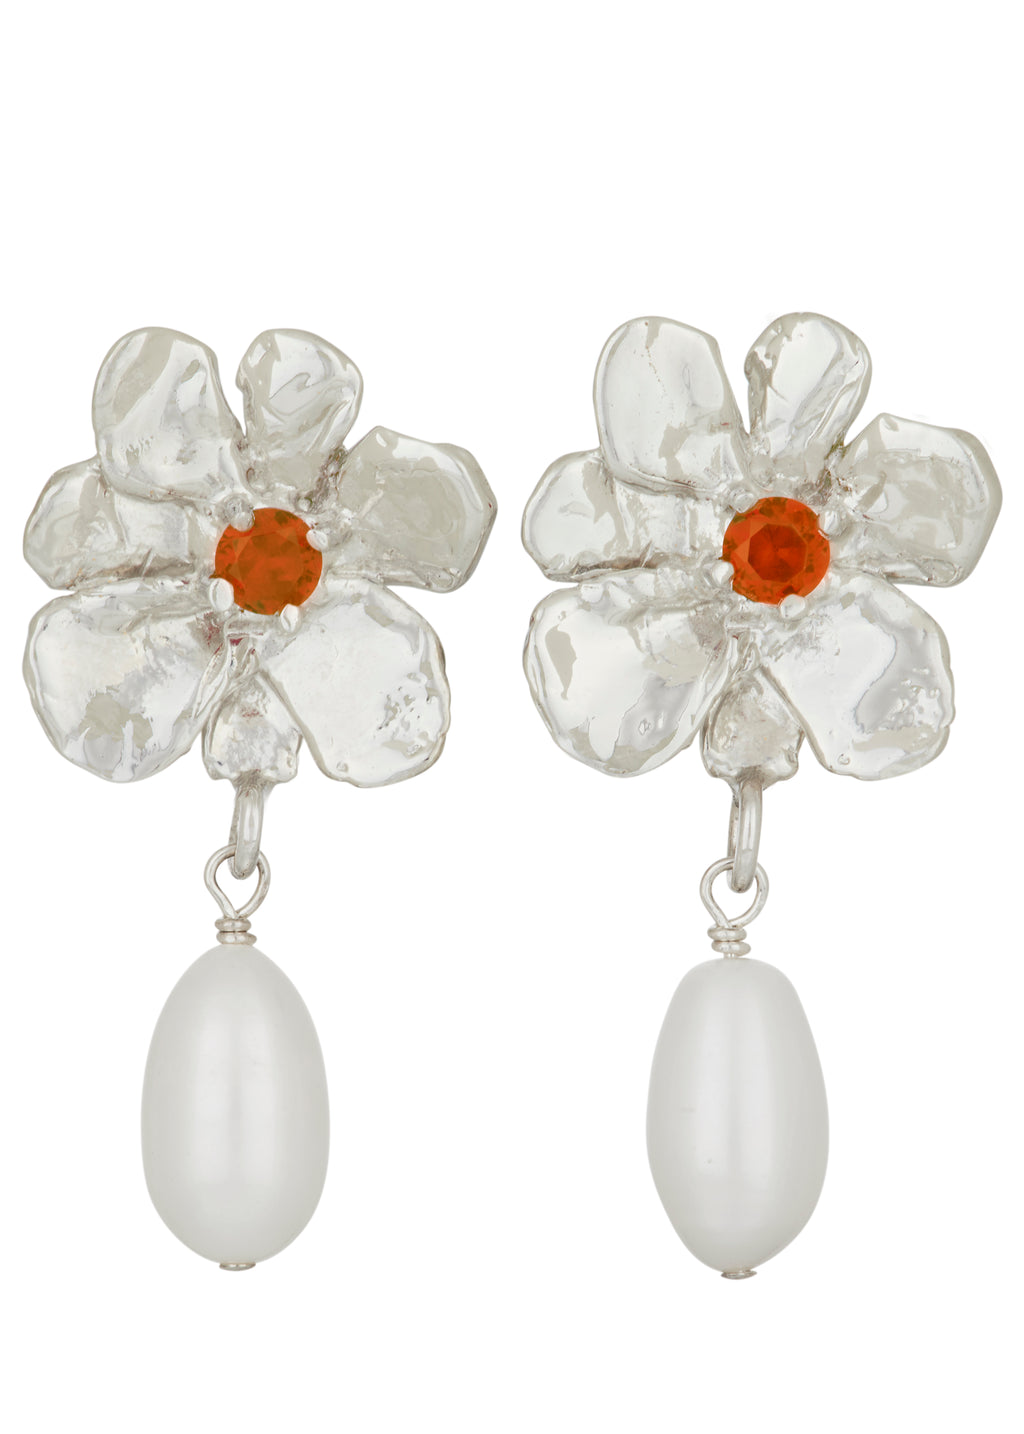 Flower Pearl Drop Earrings in Silver - Orange